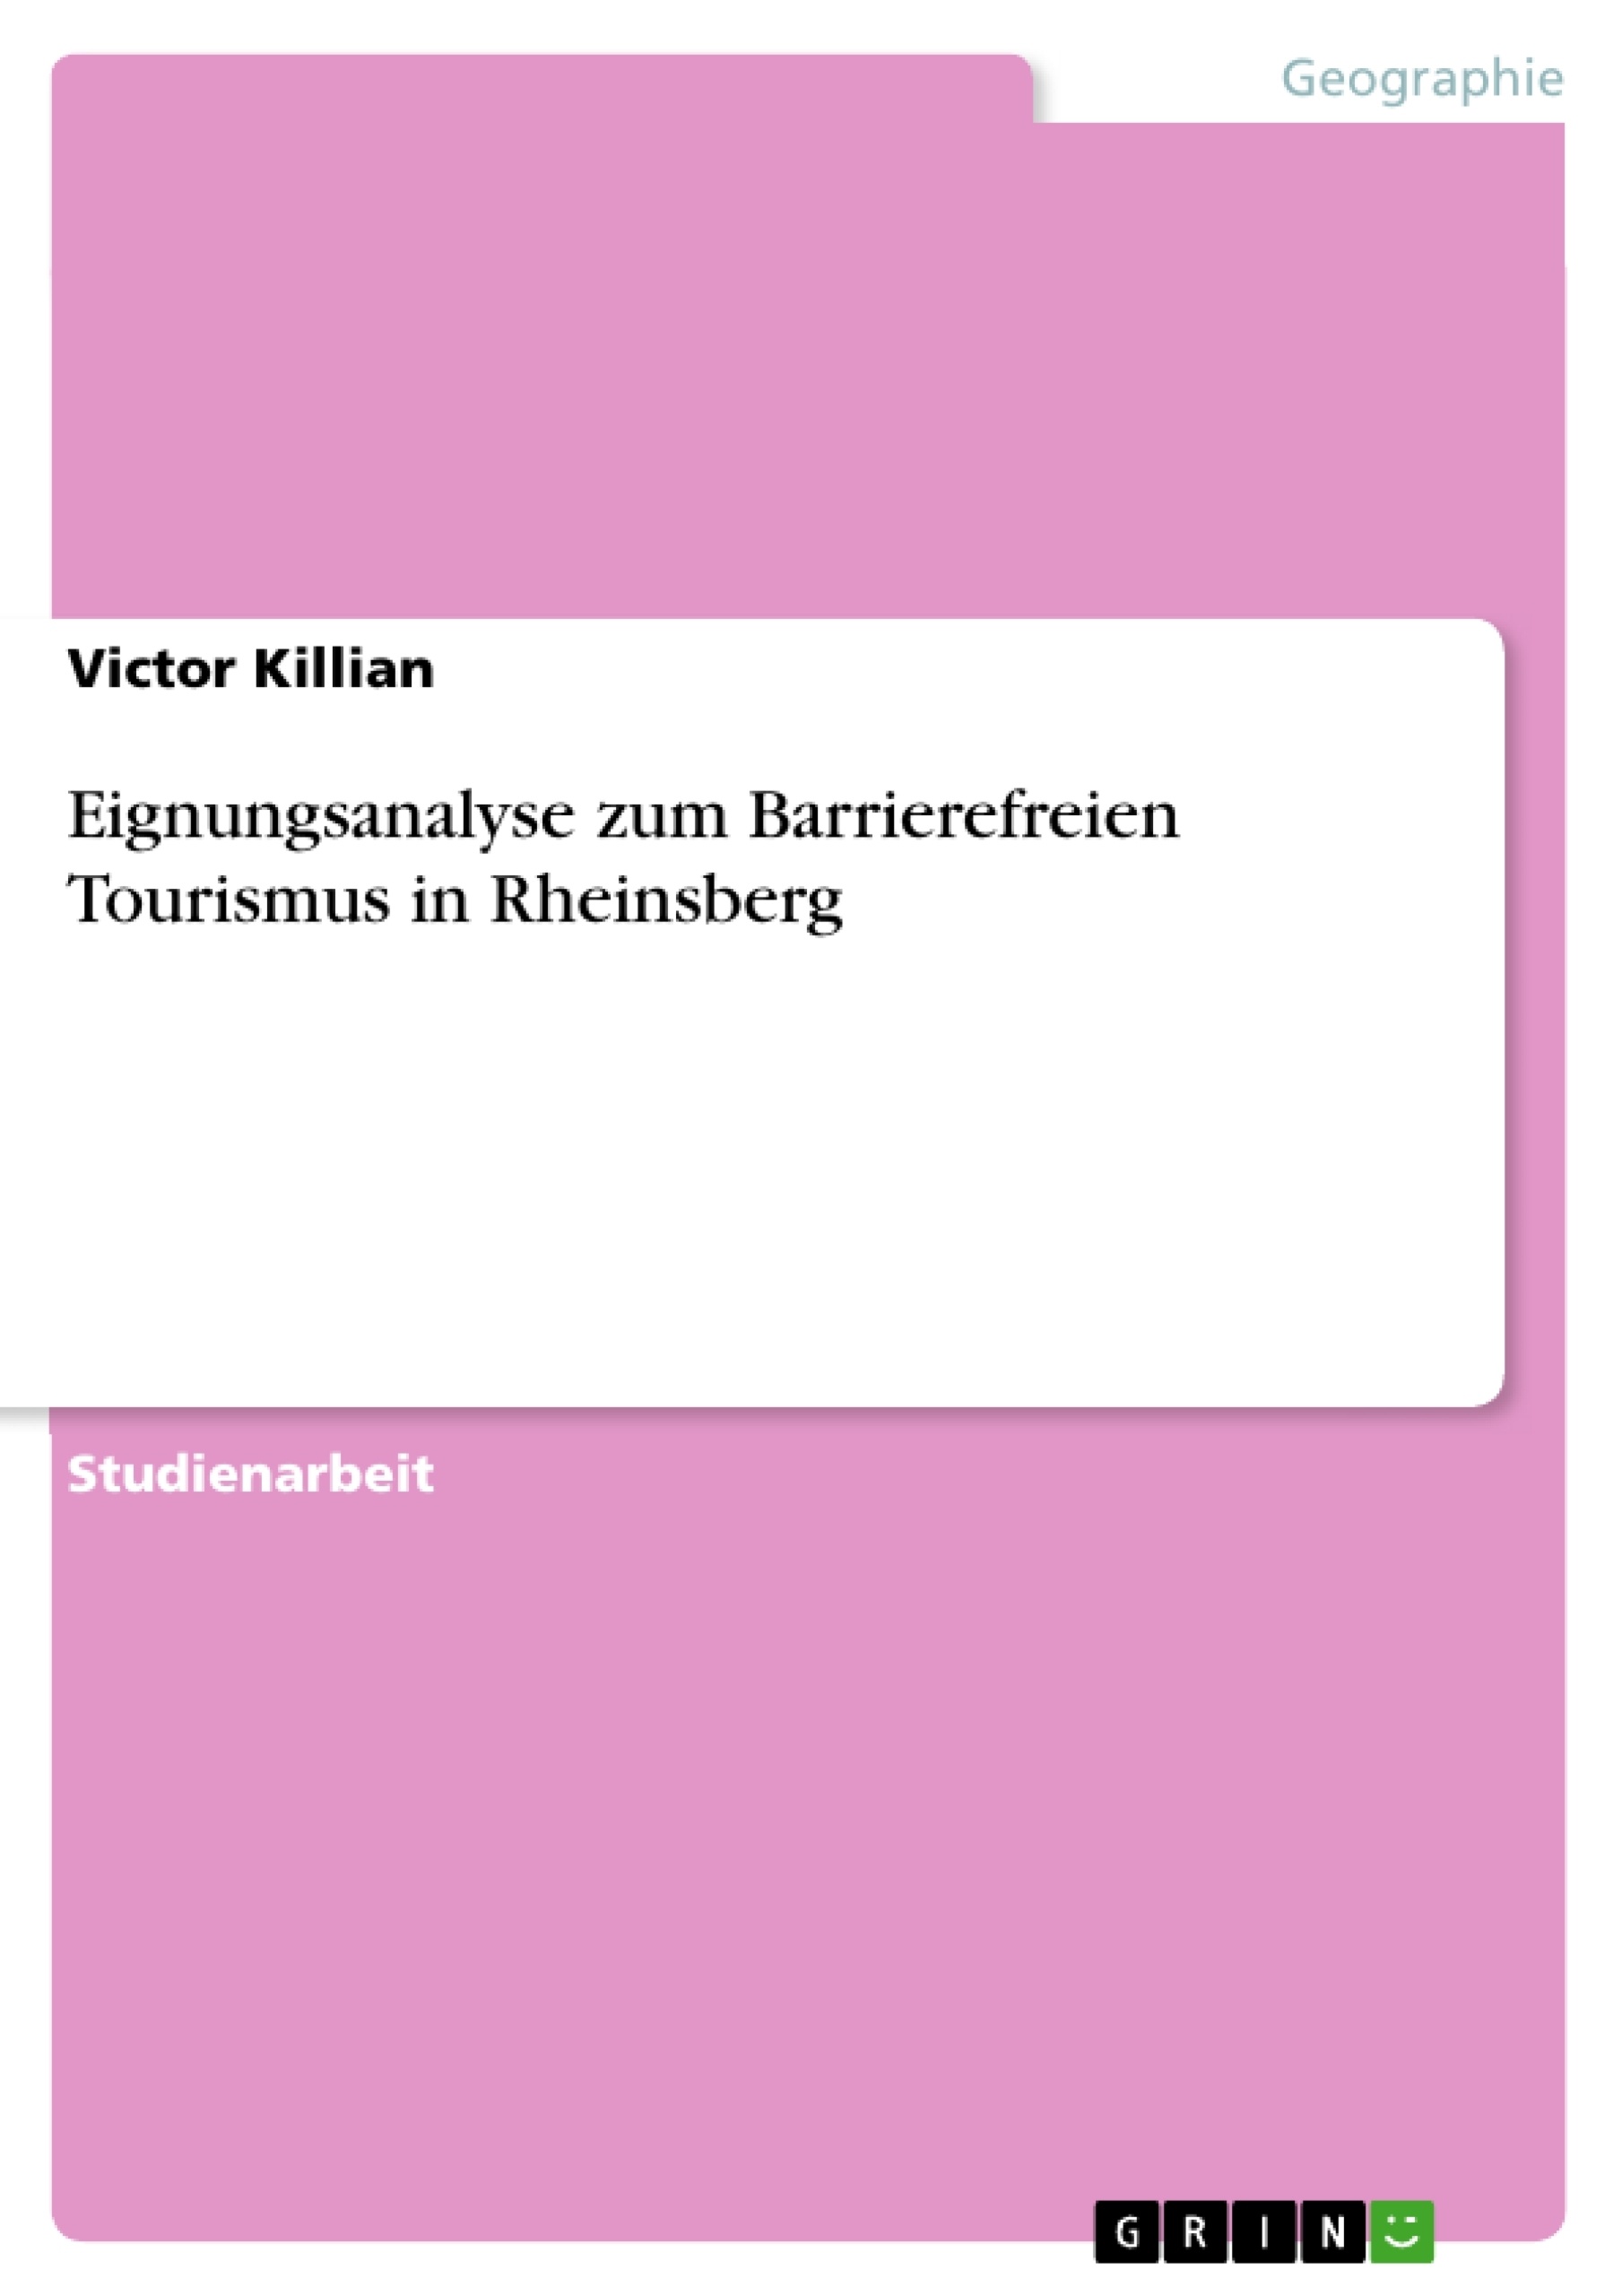 Title: Eignungsanalyse zum Barrierefreien Tourismus in Rheinsberg